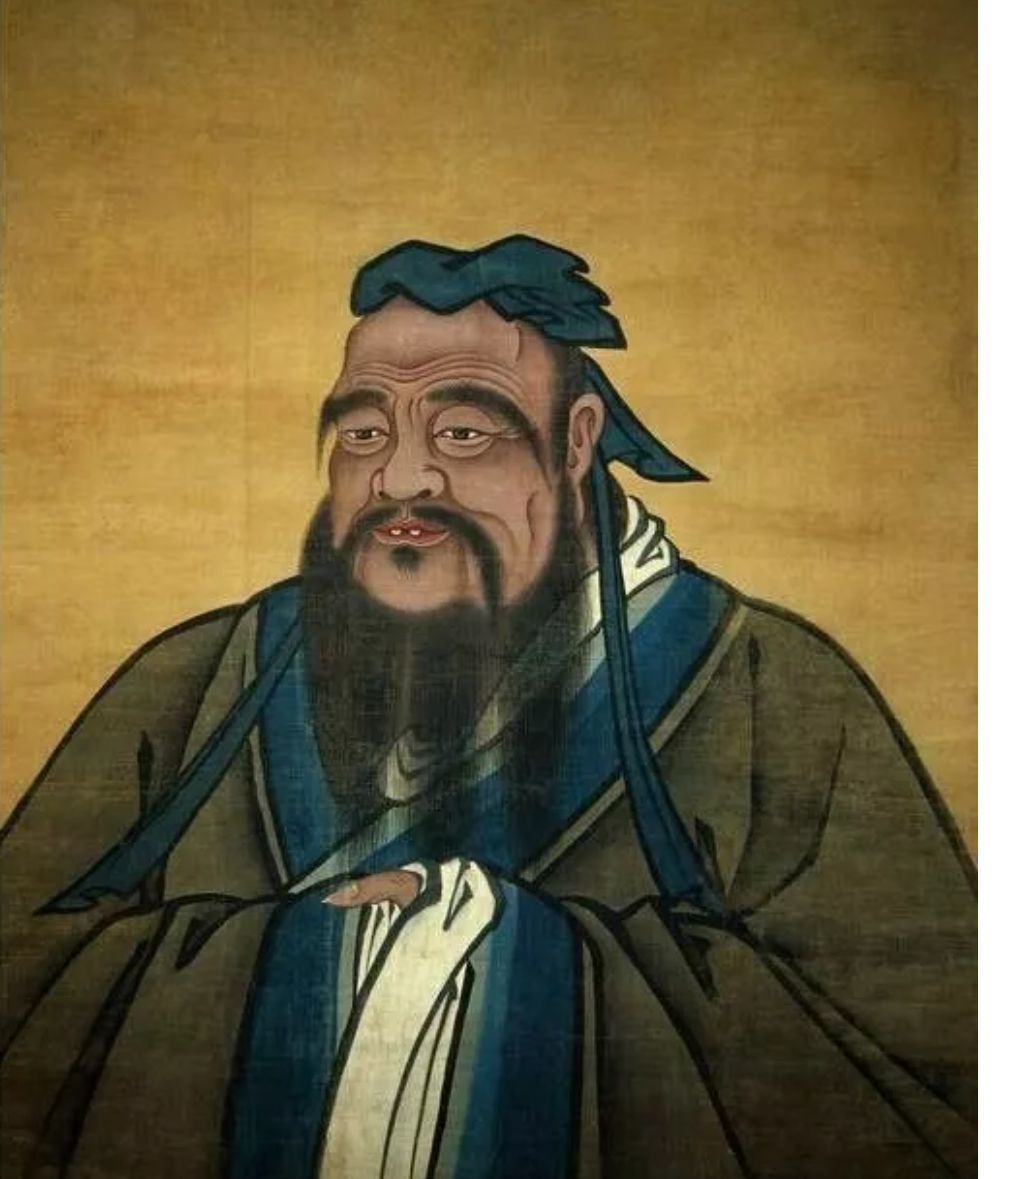 儒家思想的中心性与其人道精神之基本的吸引力